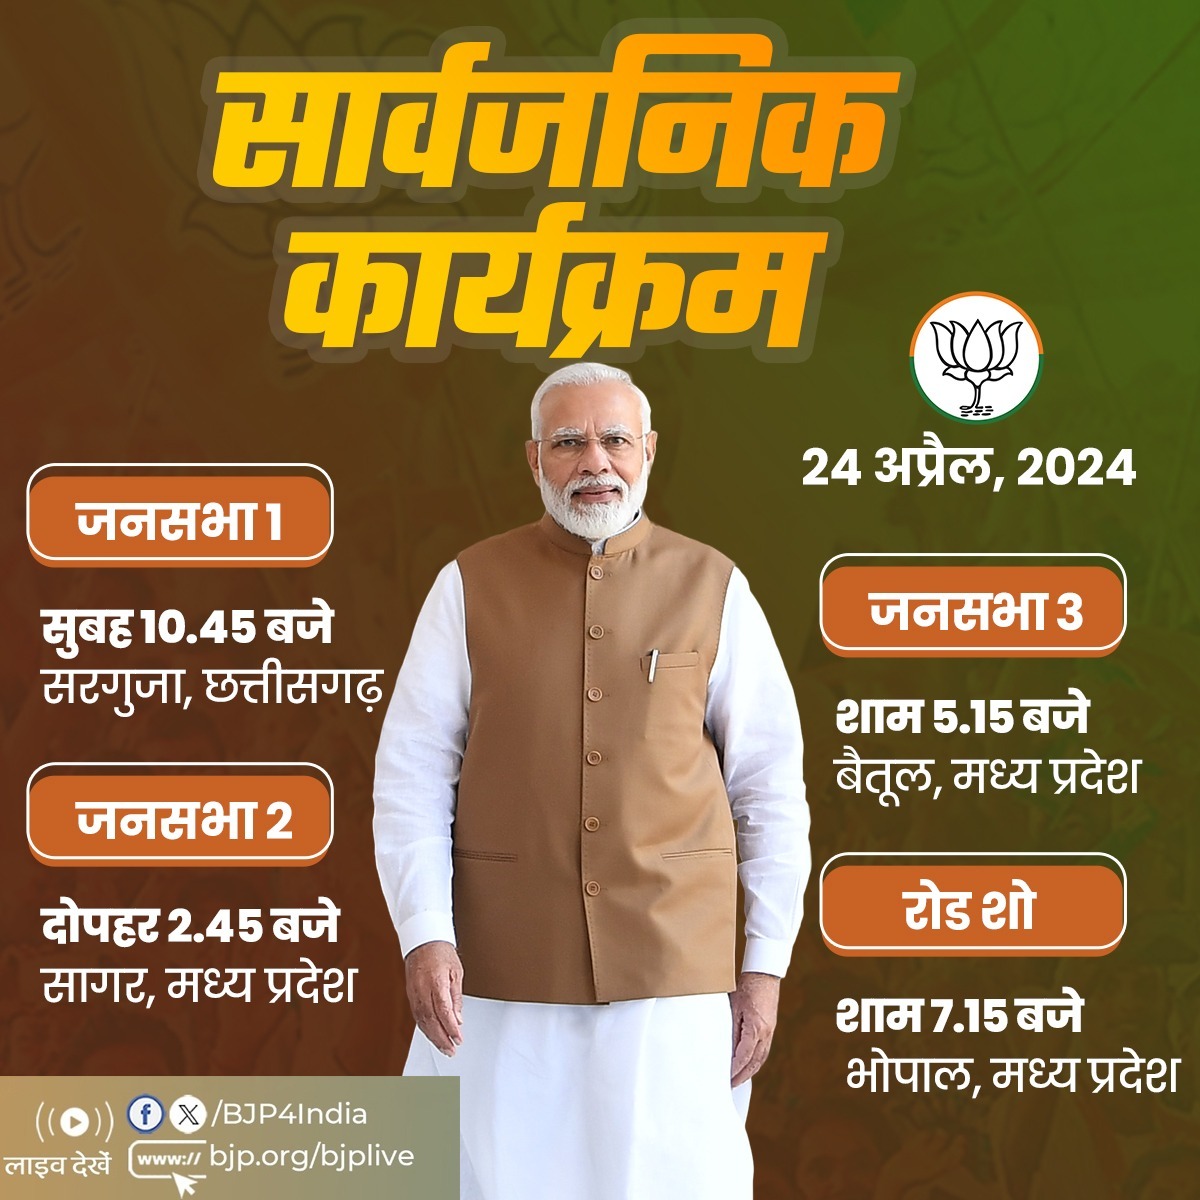 प्रधानमंत्री श्री @narendramodi के 24 अप्रैल, 2024 को छत्तीसगढ़ एवं मध्य प्रदेश में सार्वजनिक कार्यक्रम। लाइव देखें: 📺twitter.com/BJP4India 📺facebook.com/BJP4India 📺youtube.com/BJP4India 📺bjp.org/bjplive